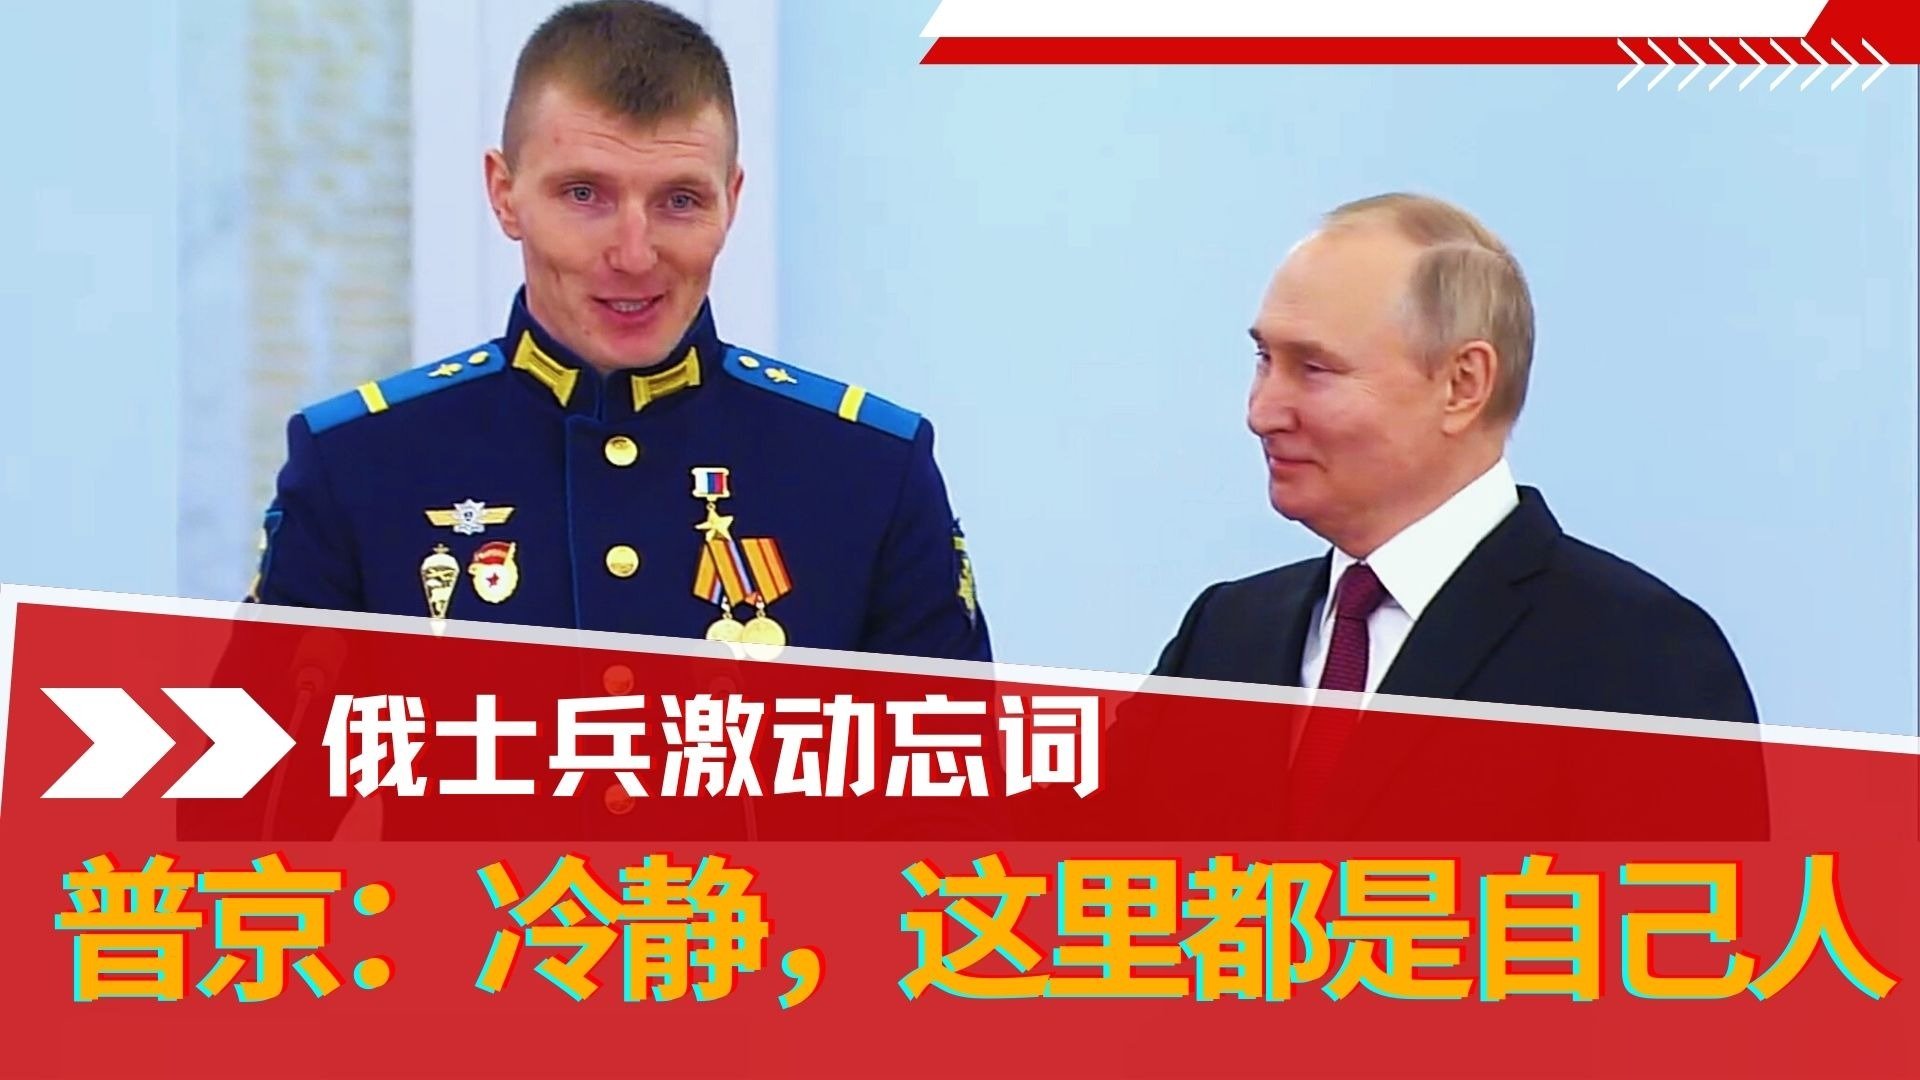 俄罗斯士兵演讲忘词 普京安慰：我演讲20年了还会紧张 都是自己人